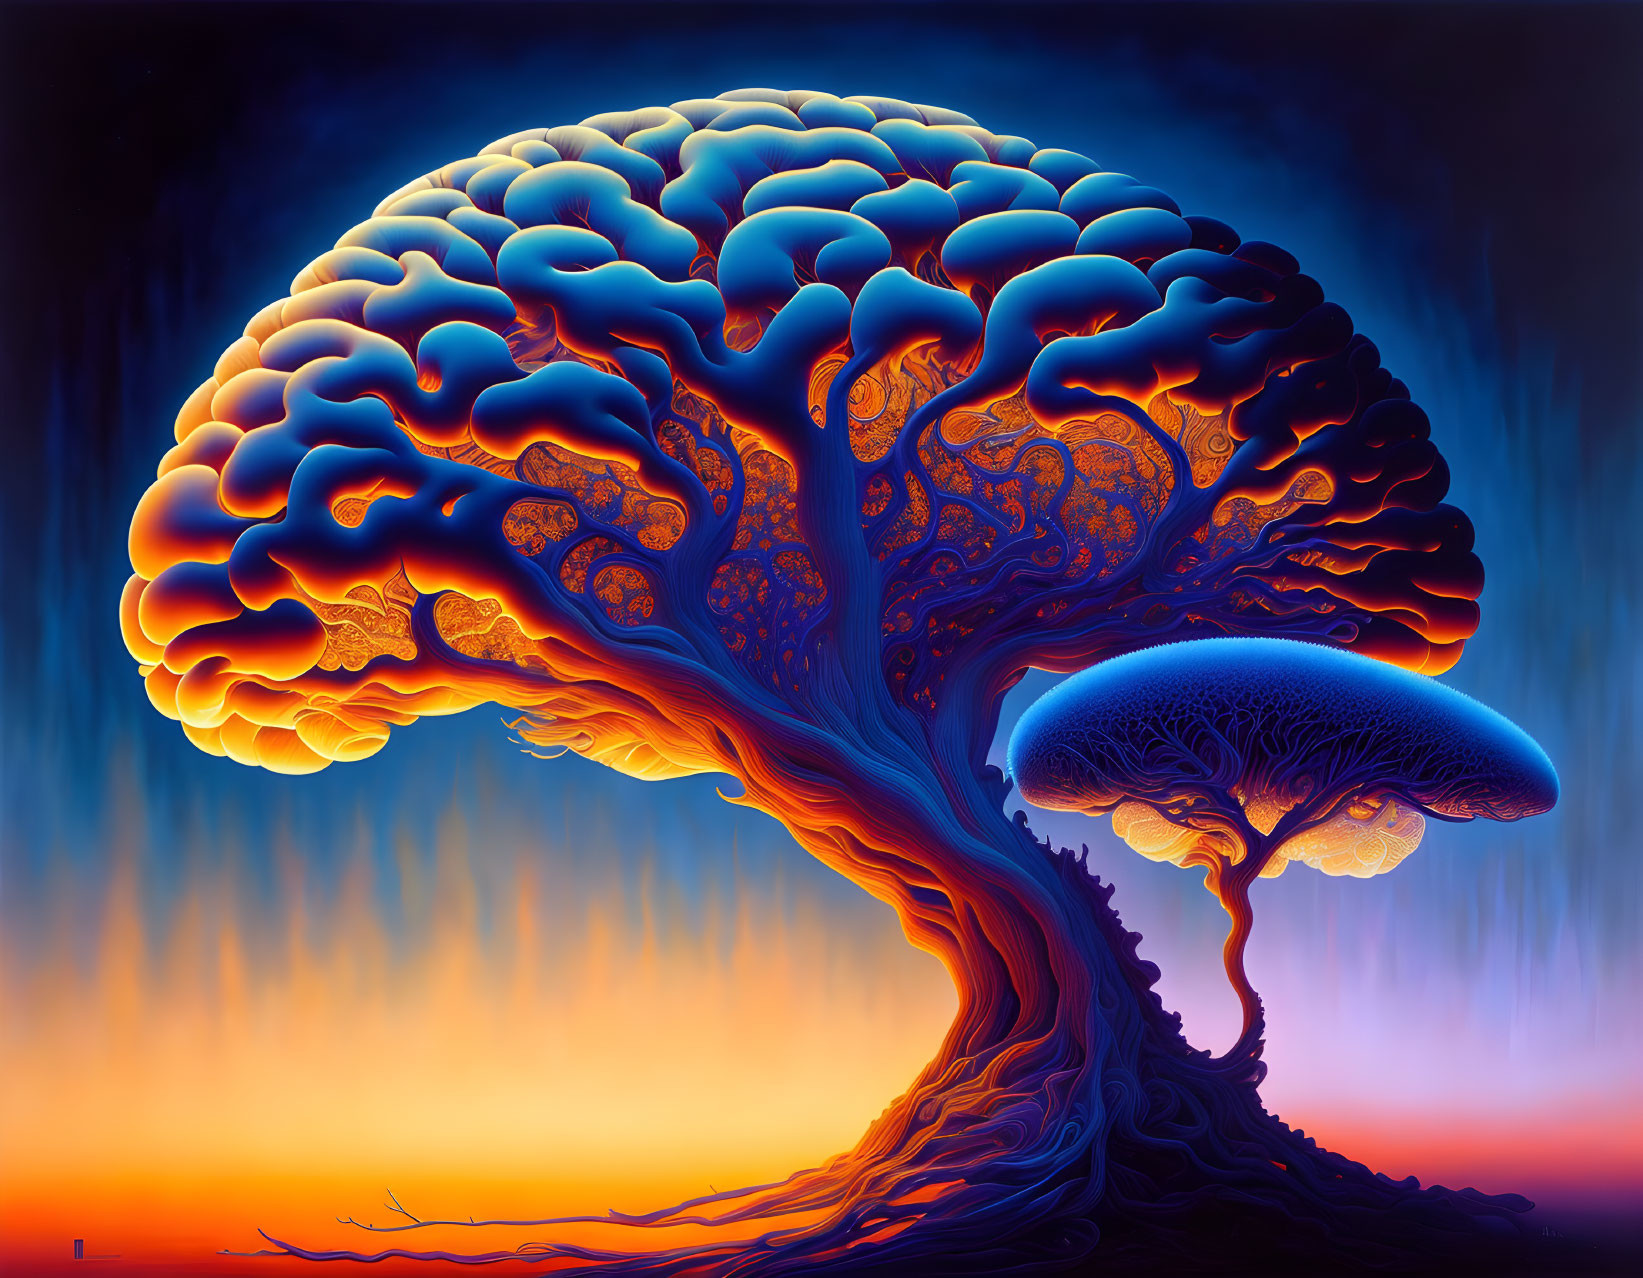 Colorful tree and mushroom illustration against sunset gradient.